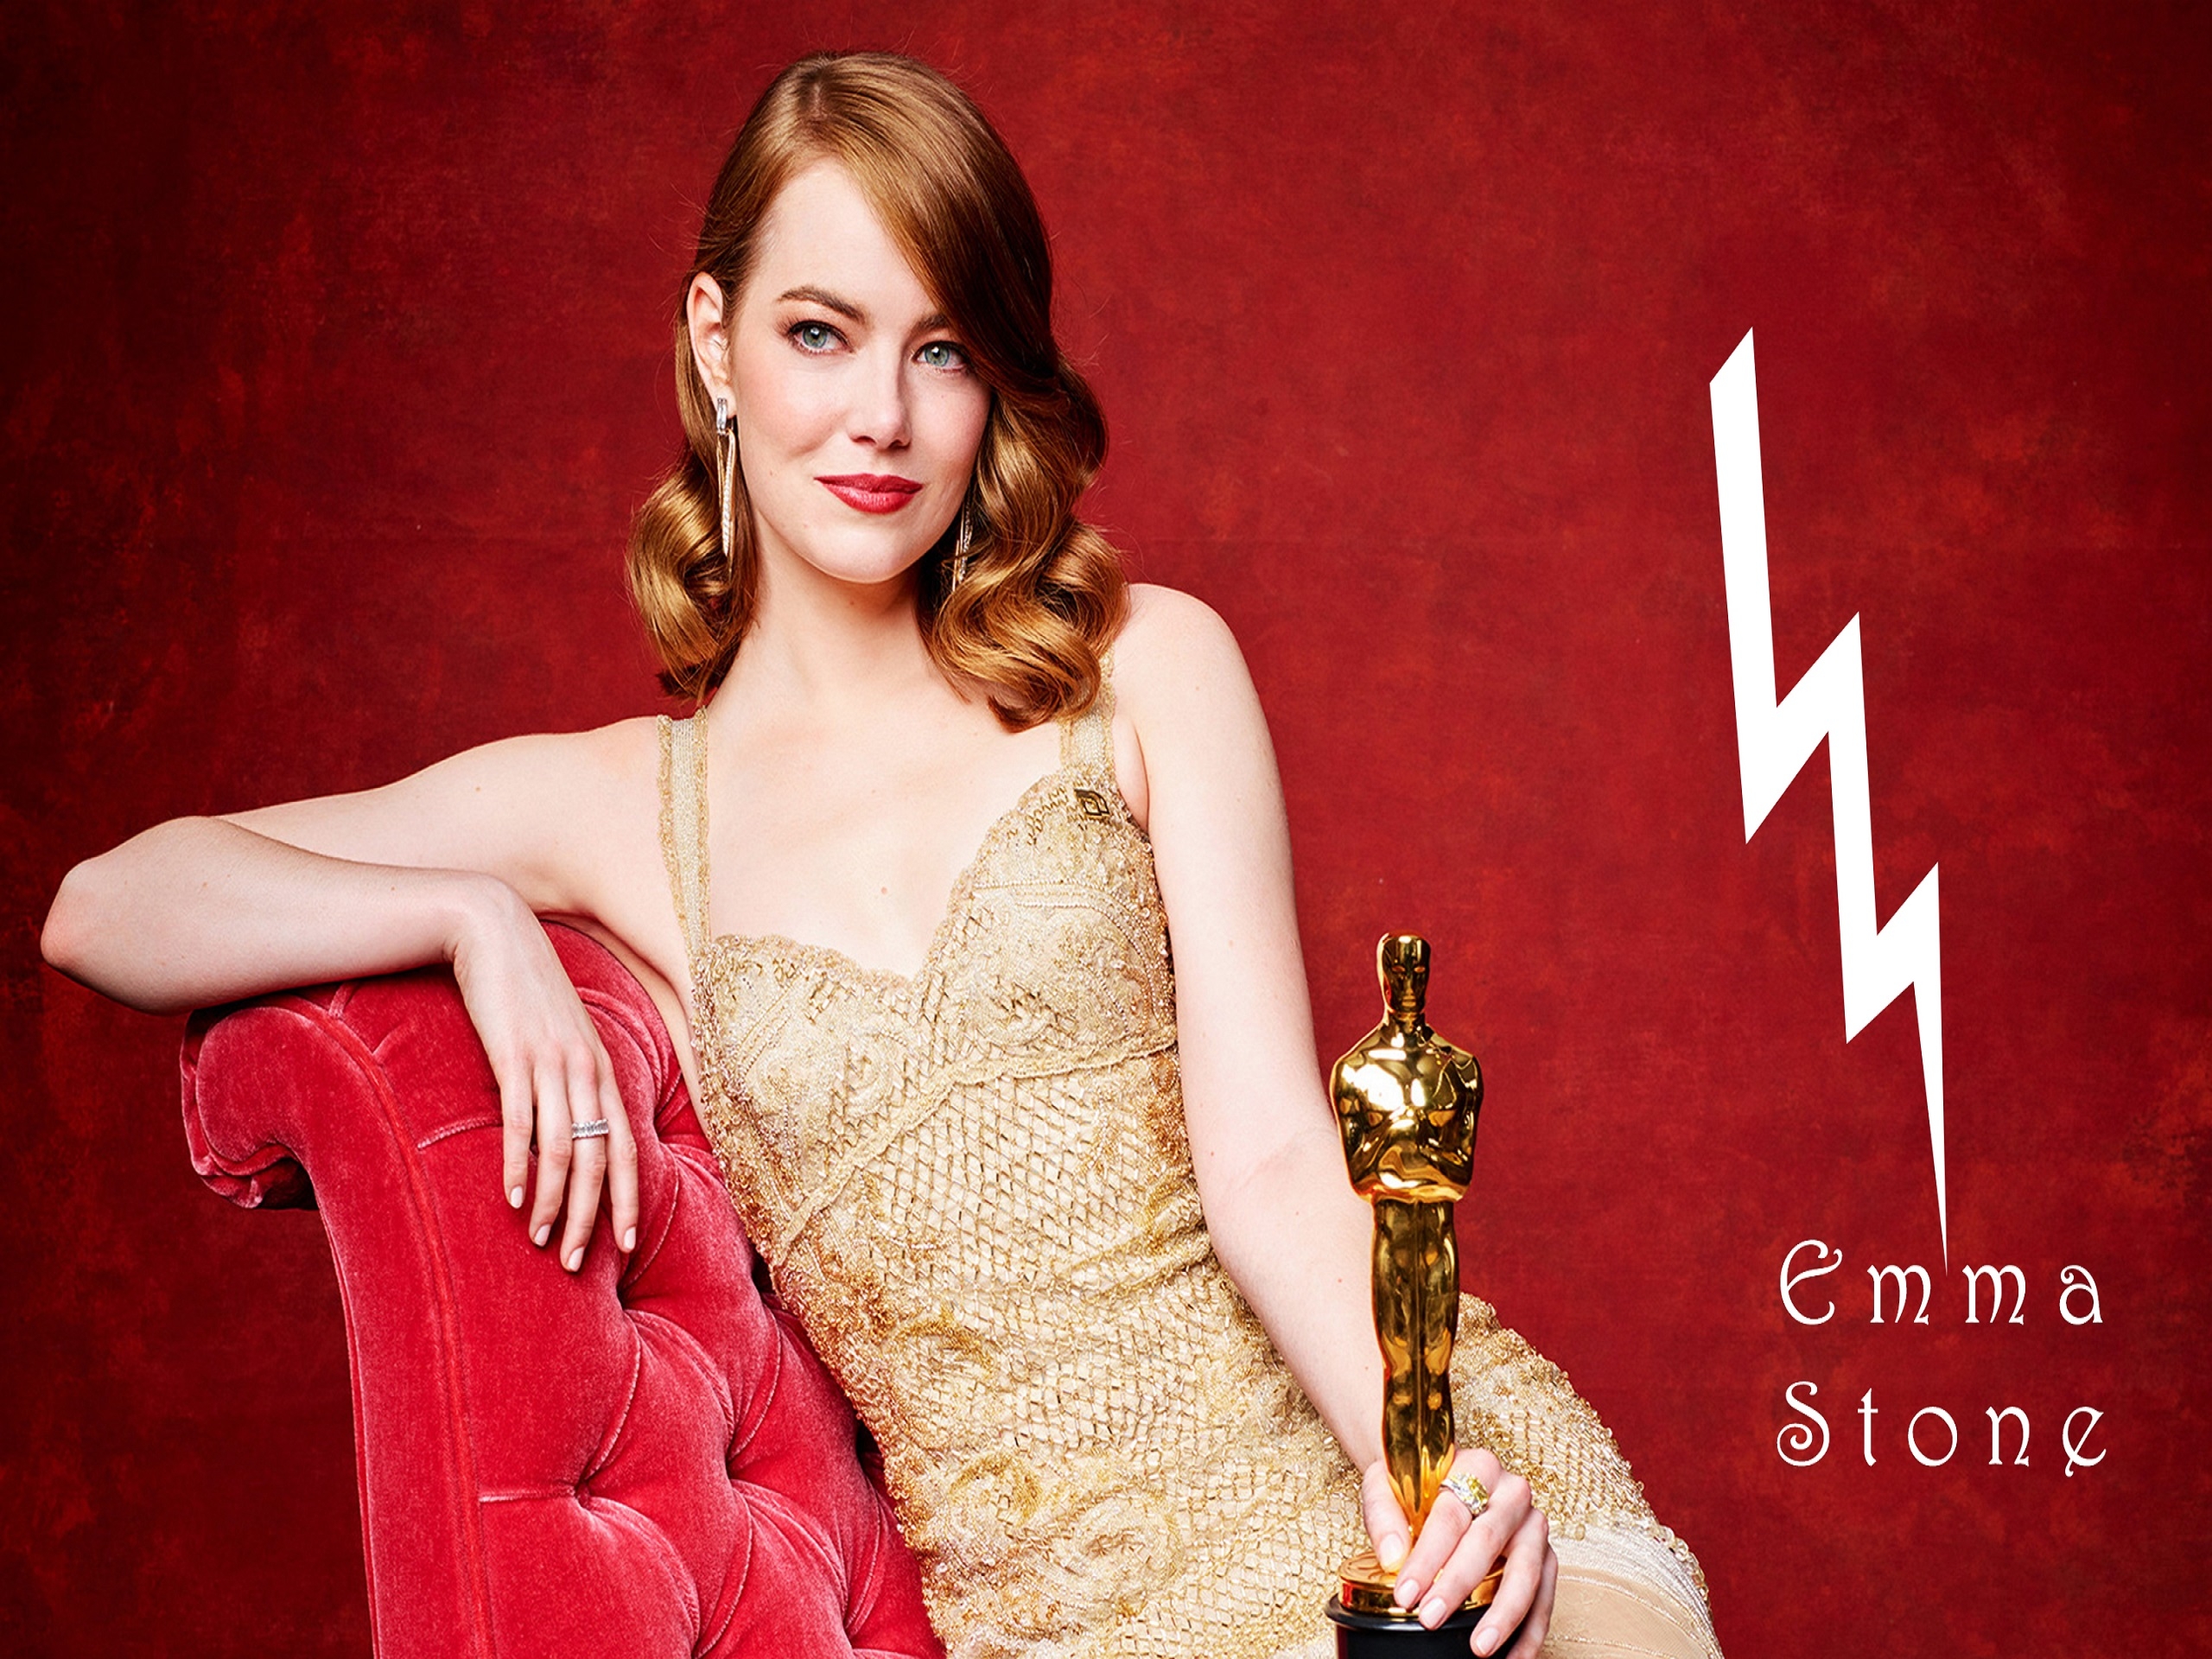 Emma Stone Oscar Winner for 2560 x 1920 resolution